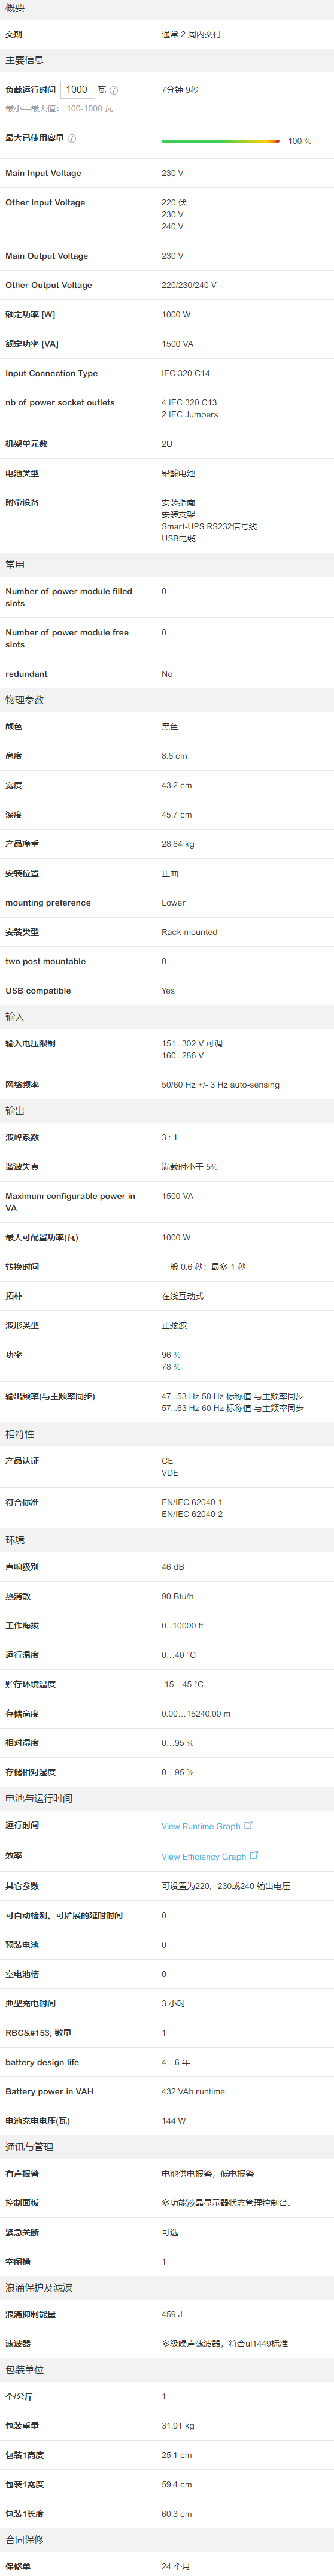 SMT1500RMI2U-CH _ APC China.png